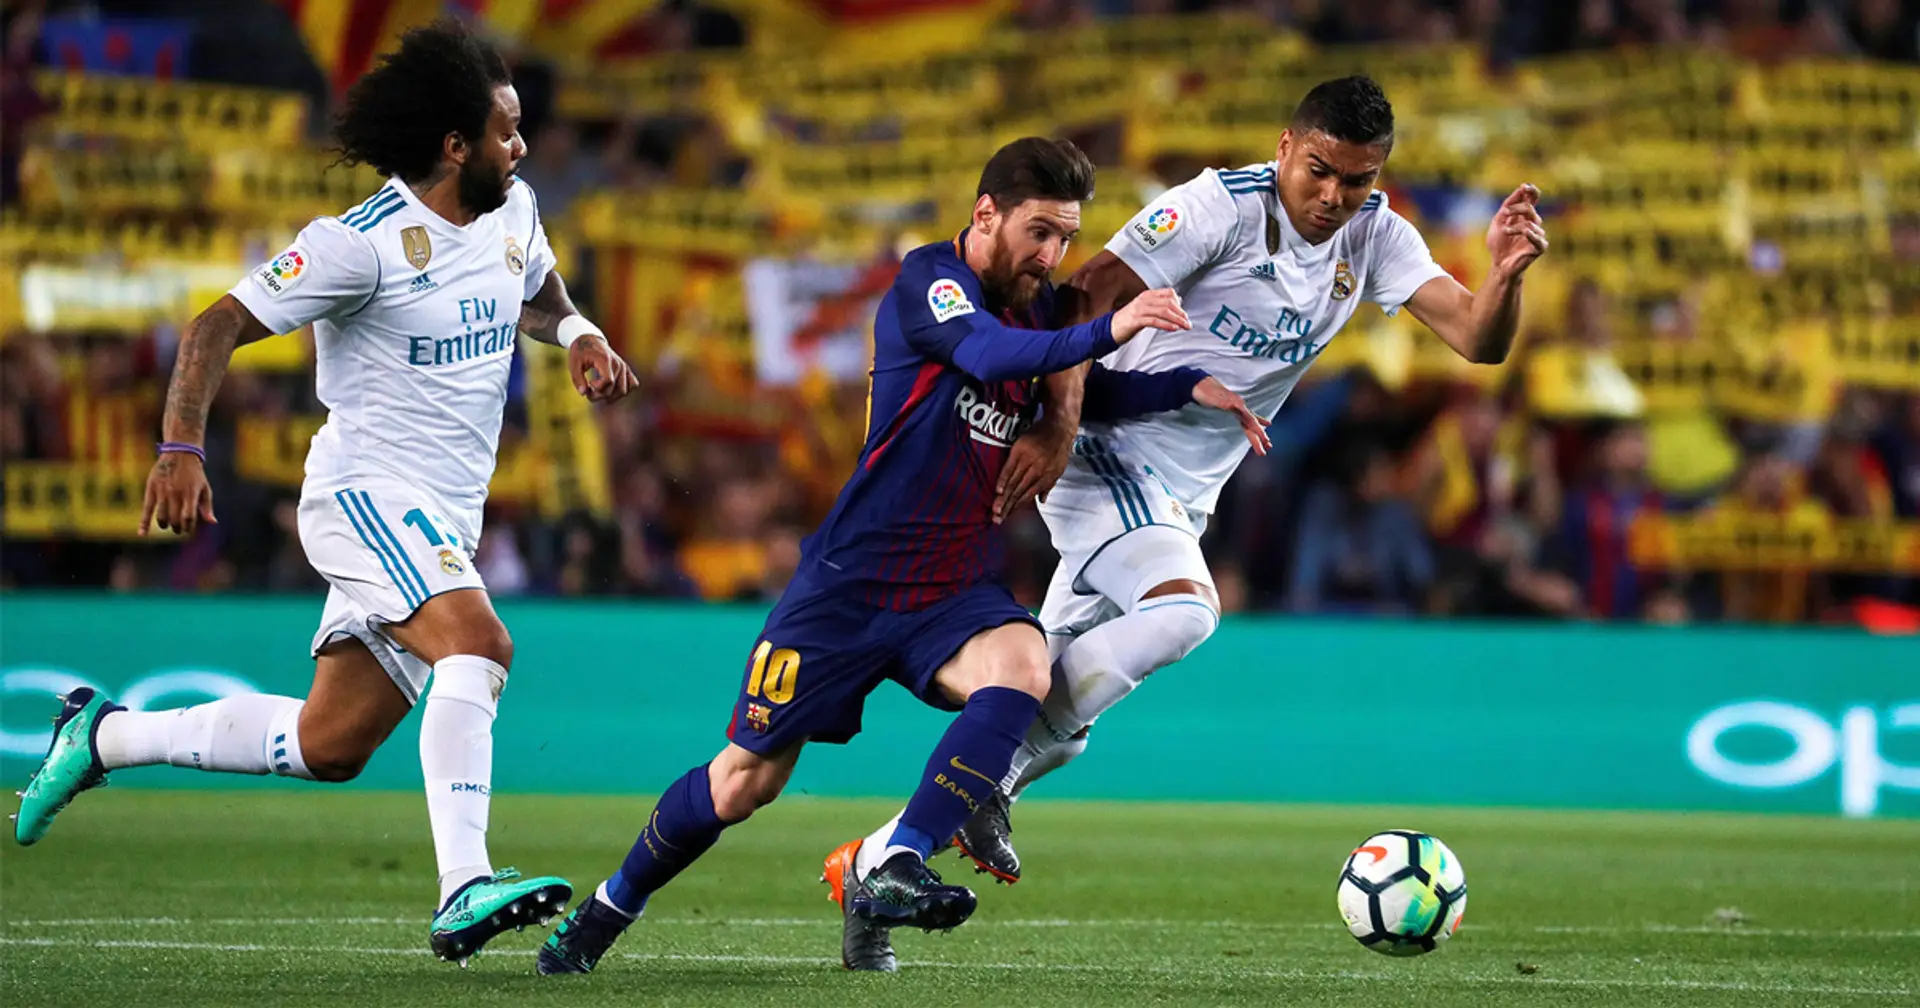 Increíble comparativa: Leo Messi gana más que los 7 mejores pagados de la plantilla del Real Madrid juntos